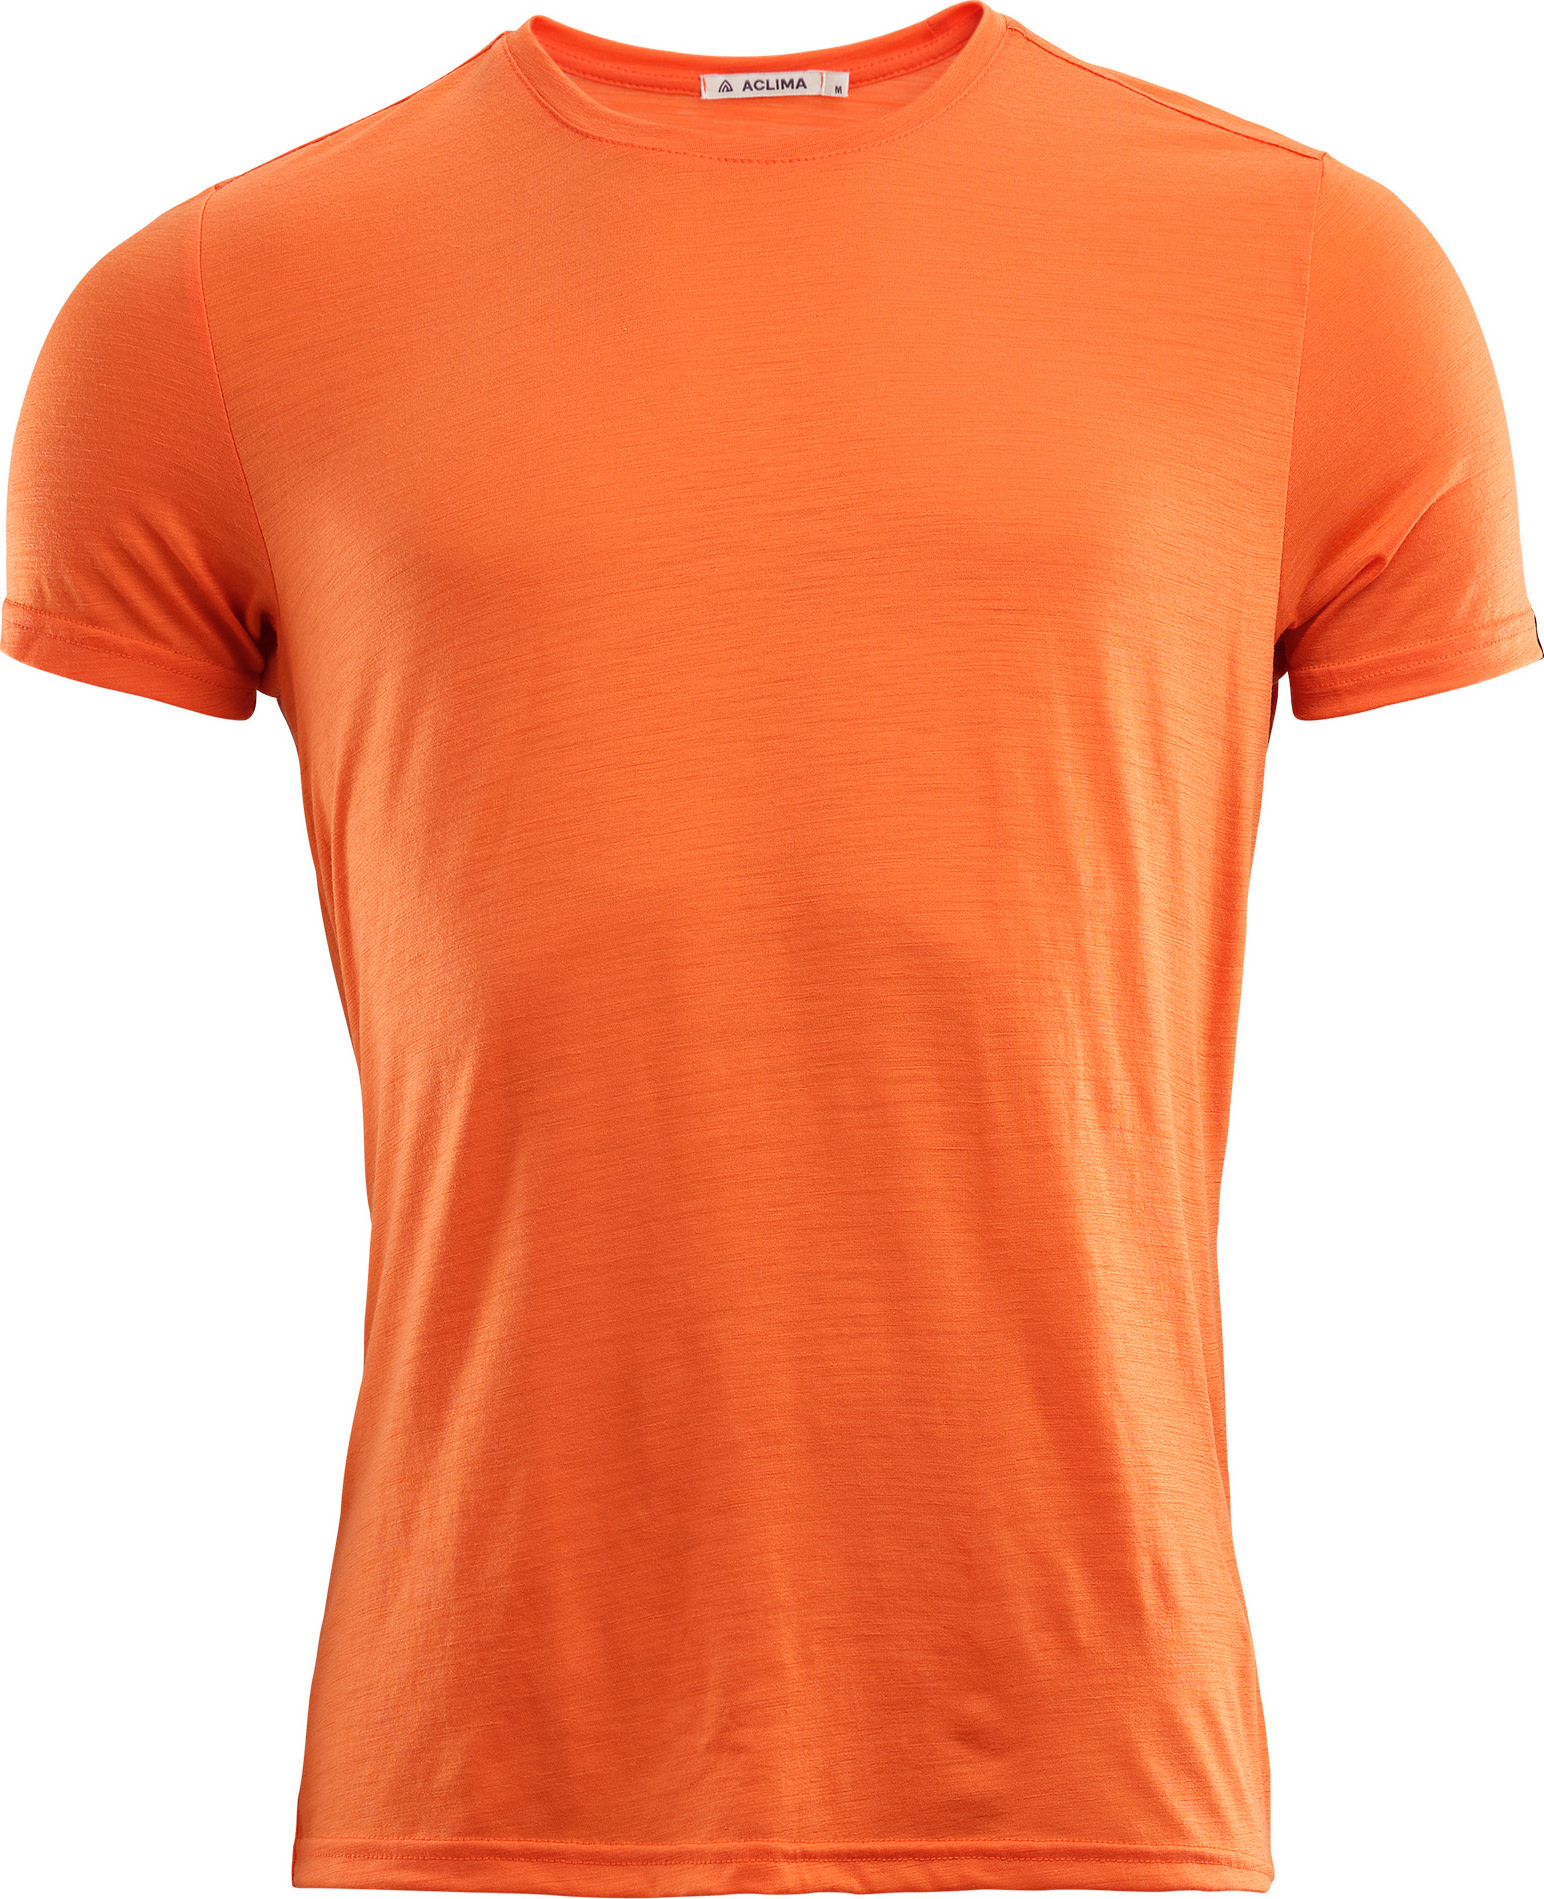 Aclima Men’s LightWool T-shirt Round Neck Orange Tiger